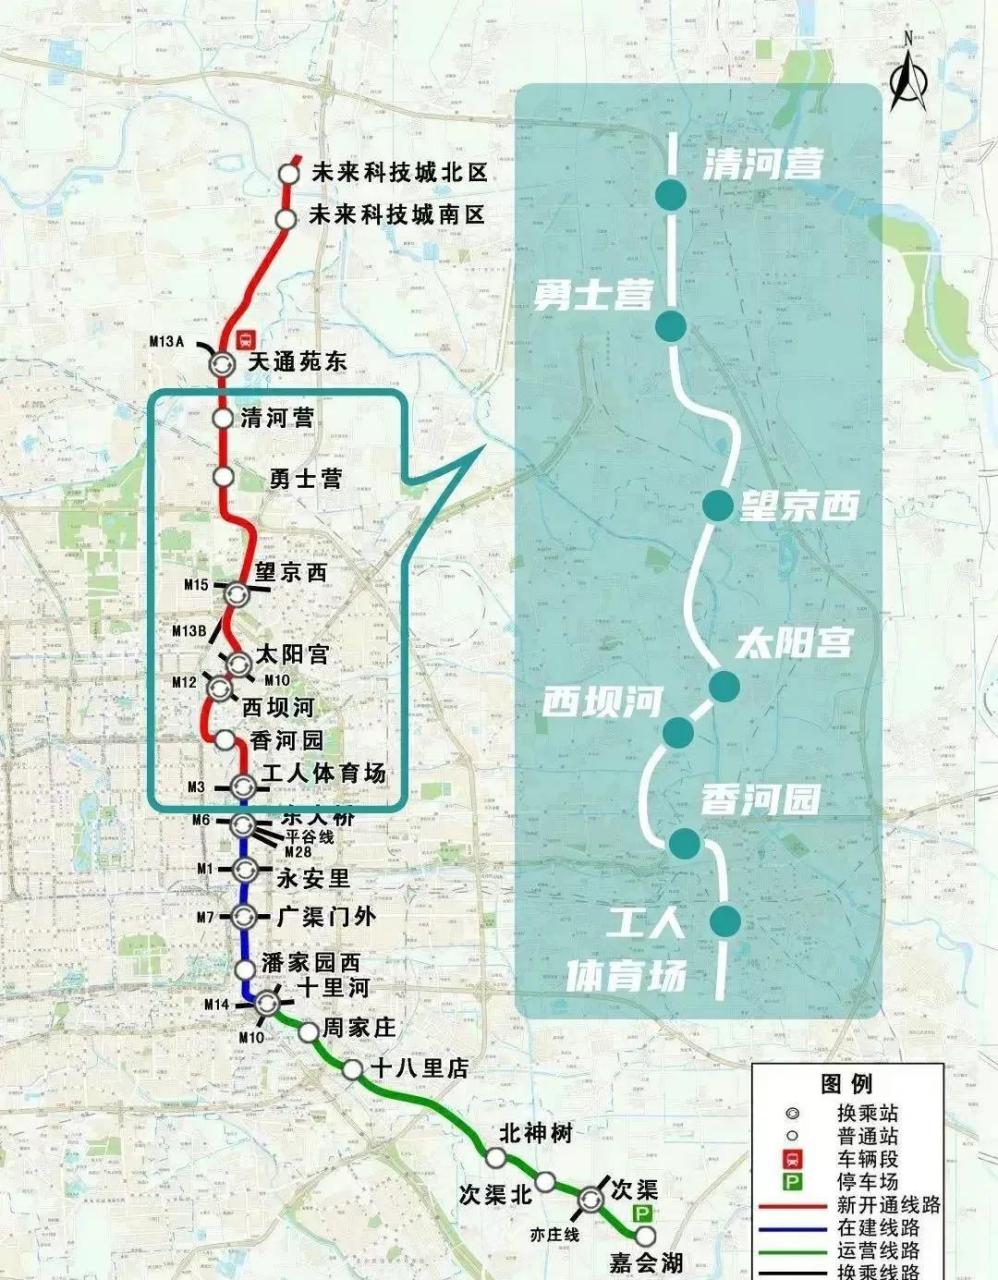 北京地铁17号线最新消息 17号线南段已于2021年建成通车,其中共有7